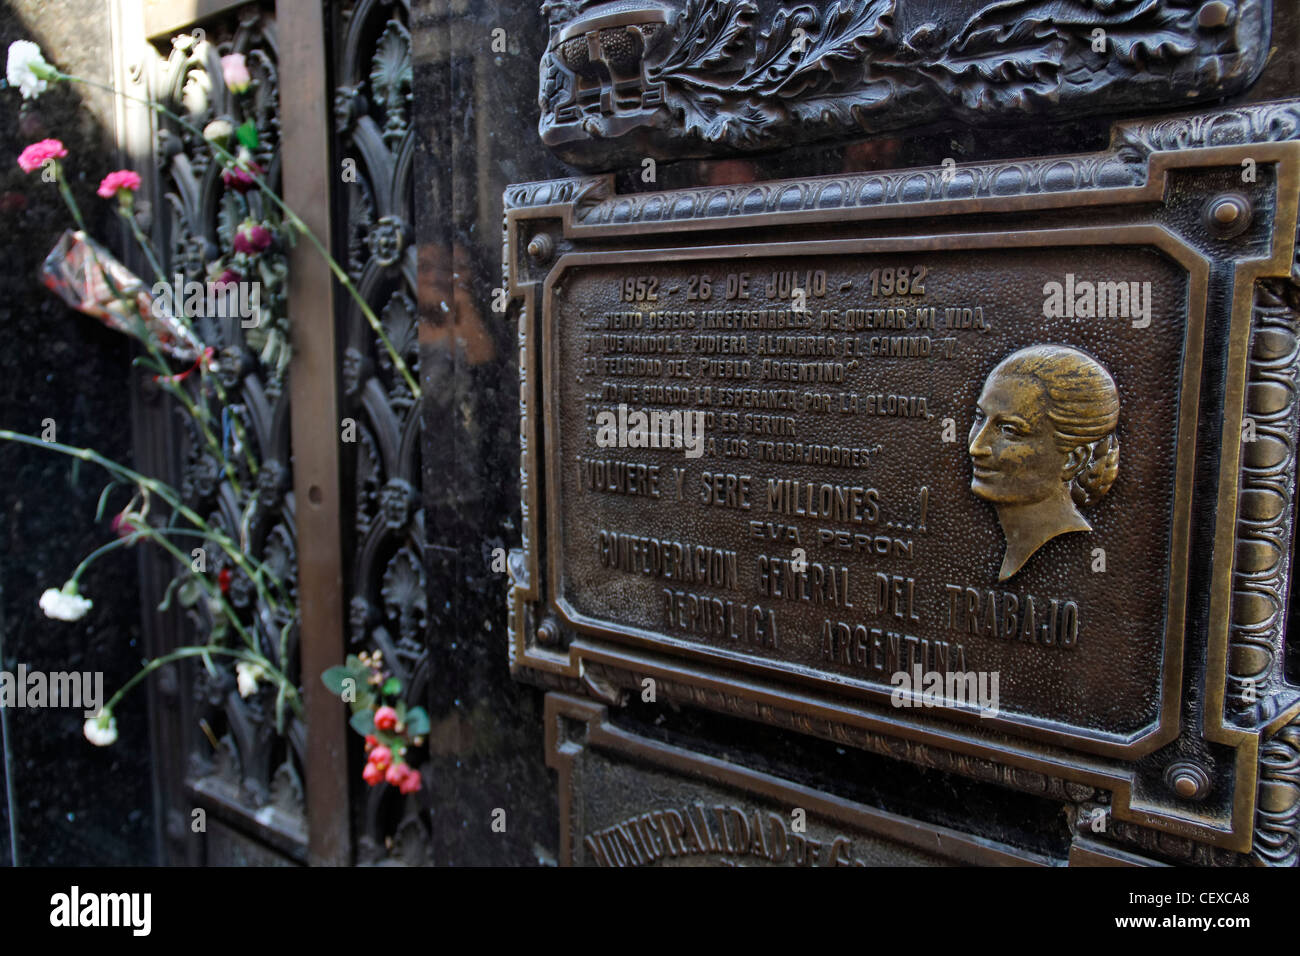 Evita Peron tombe au cimetière Monument de la Recoleta, Buenos Aires, Argentine Banque D'Images